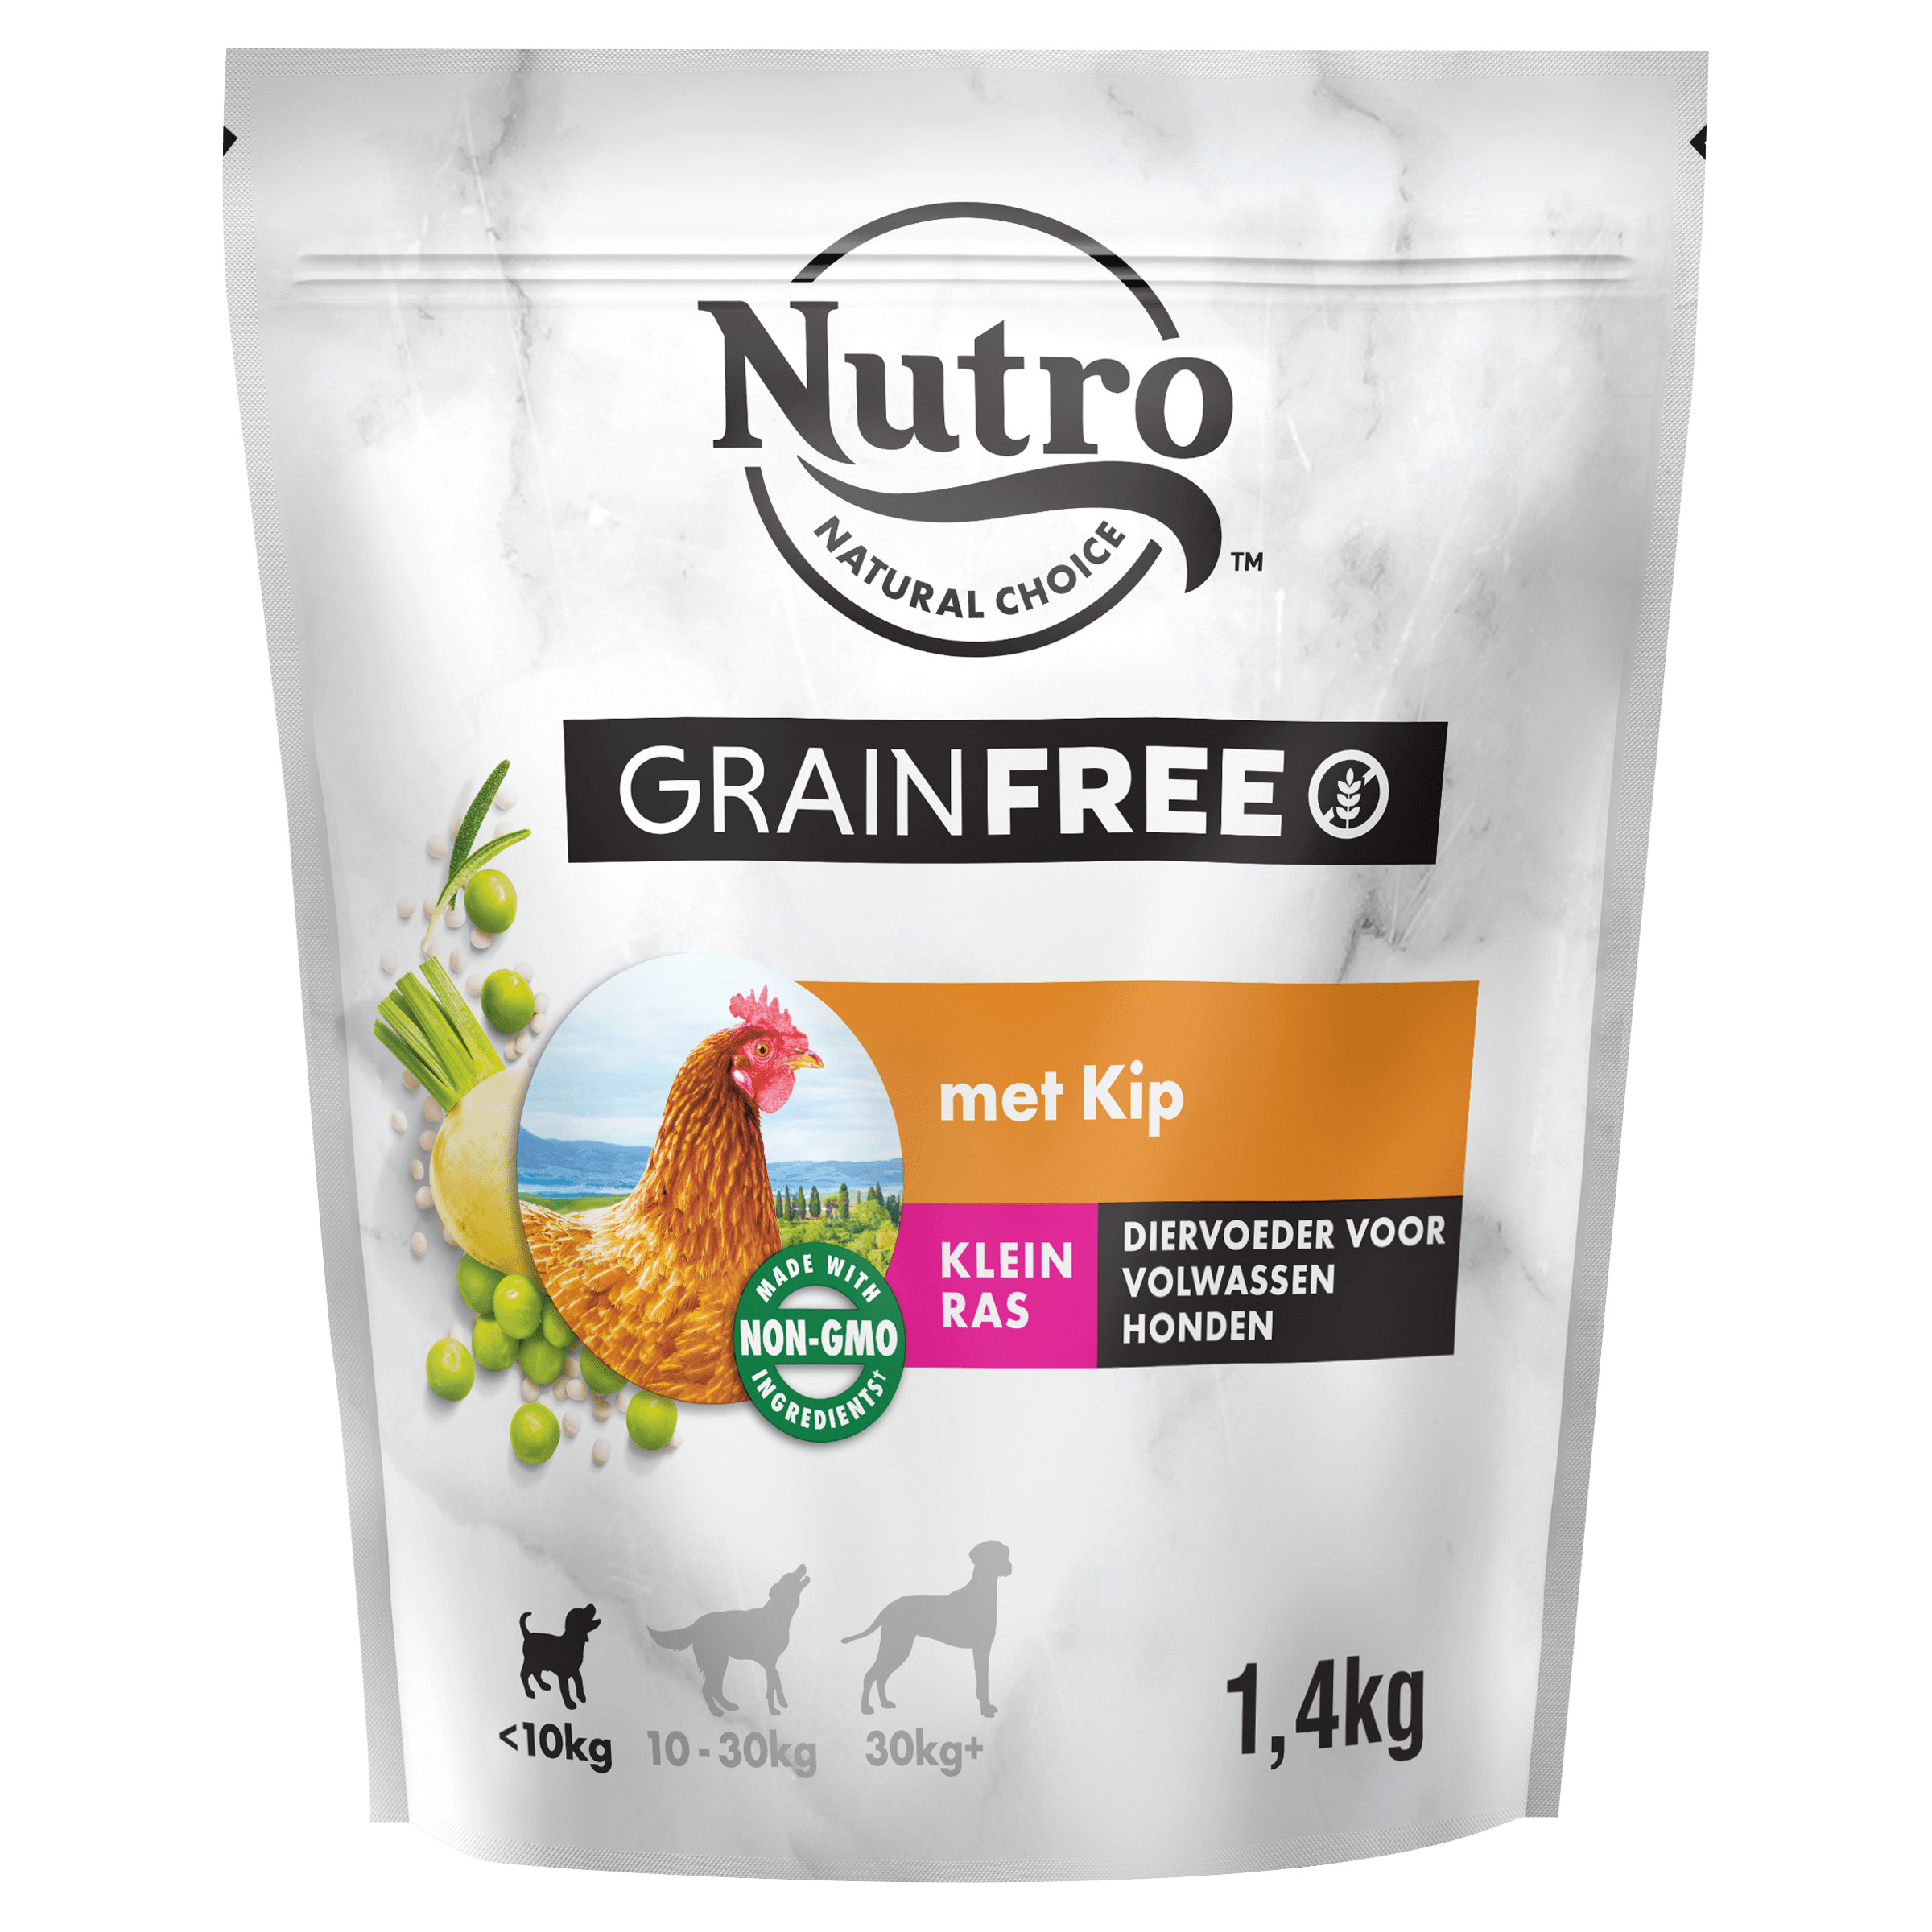 Nutro Grain Free Adult Small Kip hondenvoer 1.4 kg